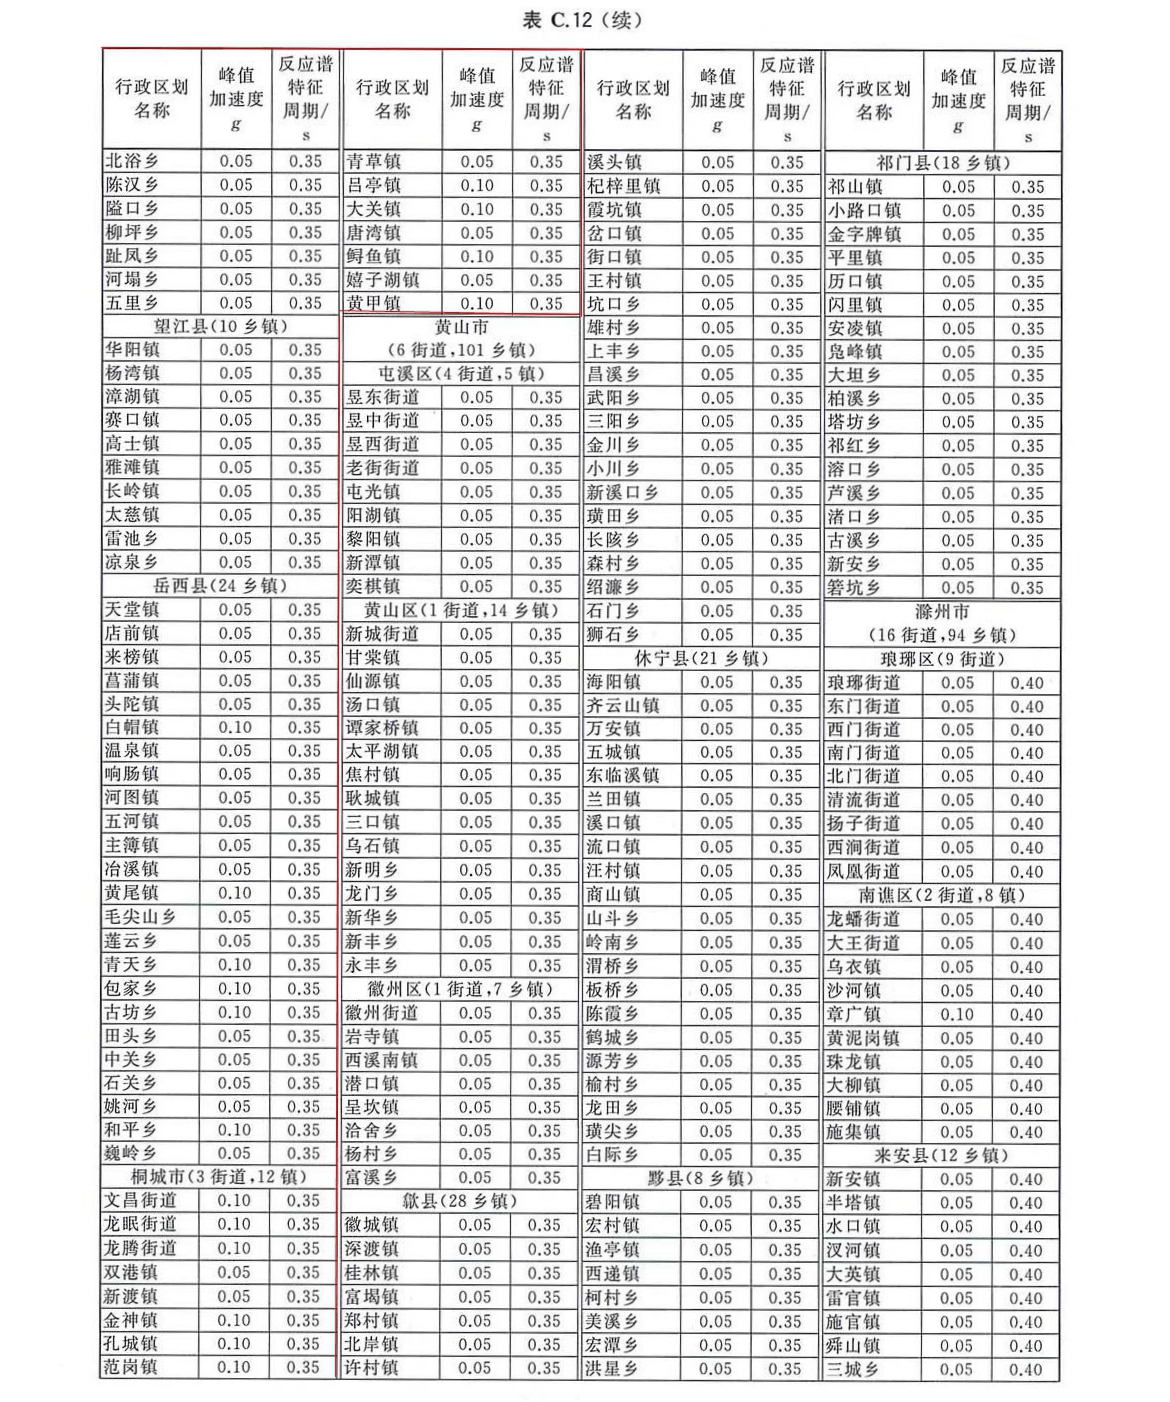 安徽省安庆市城镇Ⅱ类场地基本地震动峰值加速值和基本地震加速度反应谱特征周期值列表